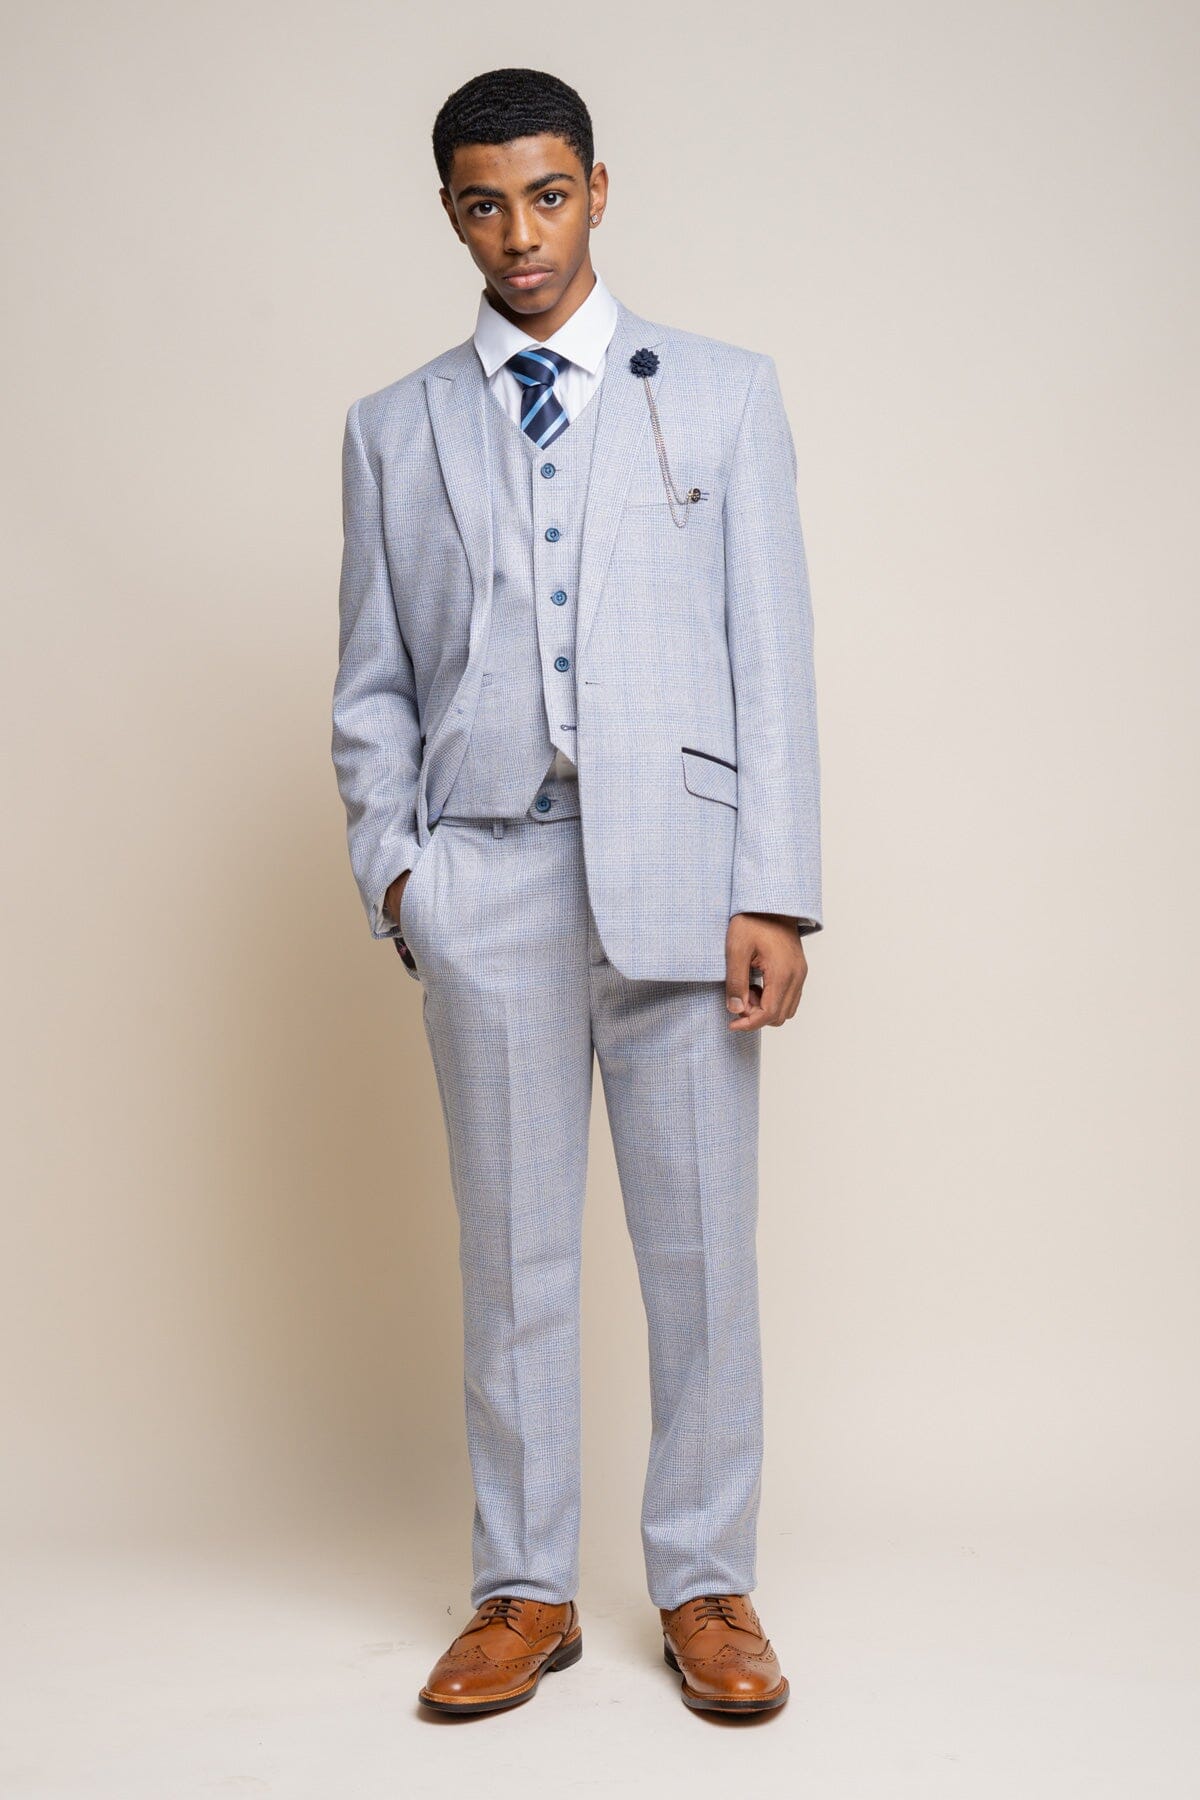 Caridi Sky Boys 3 Piece Suit - Childrenswear - 